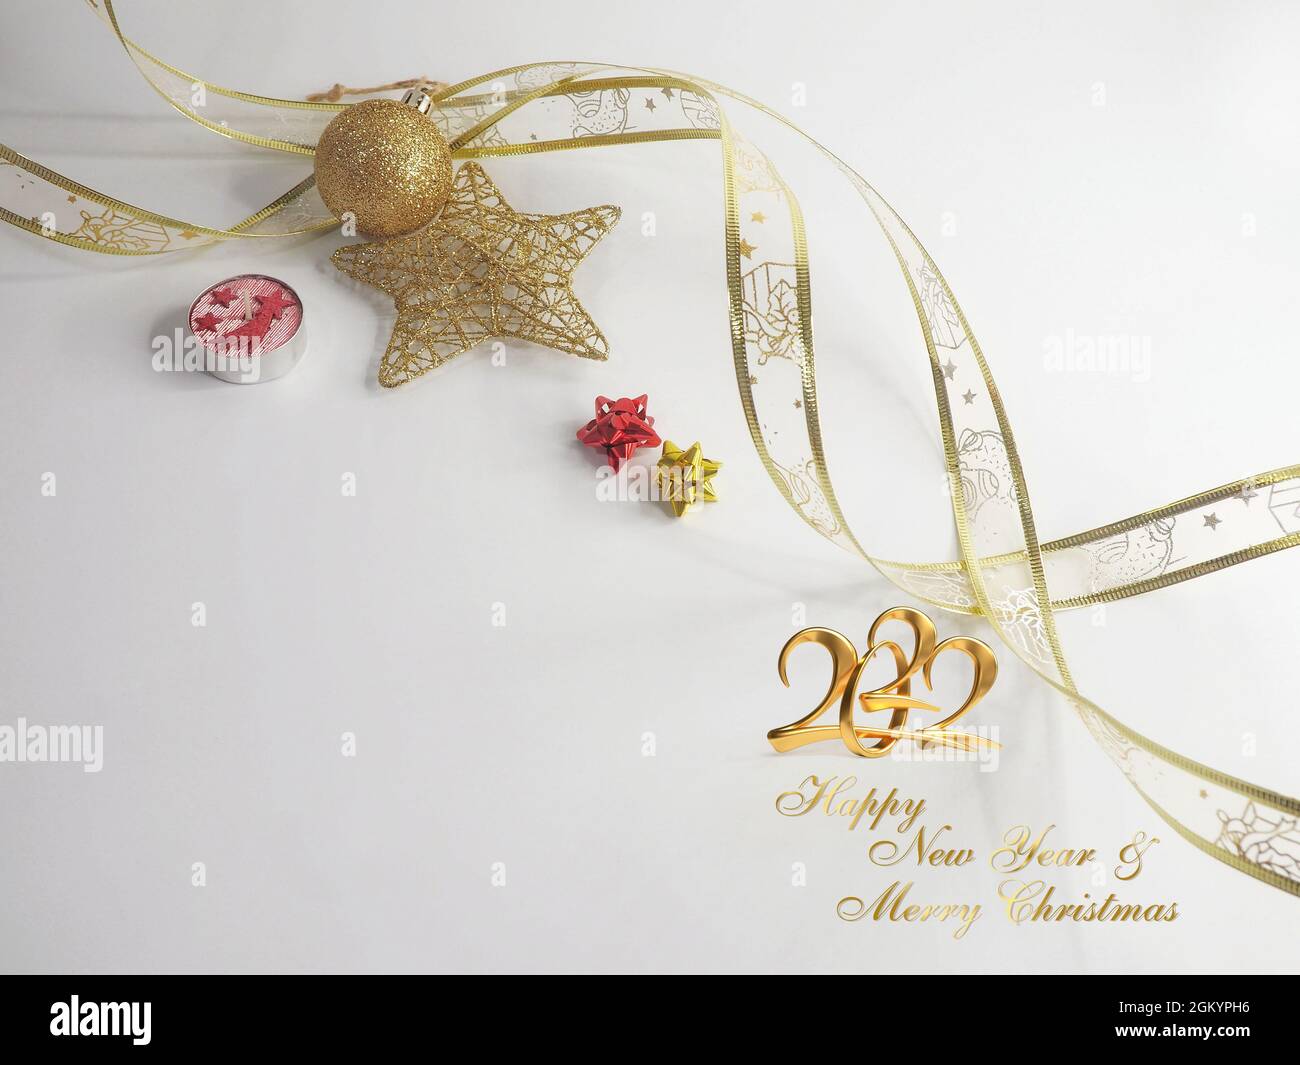 Feliz Navidad y feliz año nuevo 2022 tarjeta de felicitación sobre fondo blanco Foto de stock